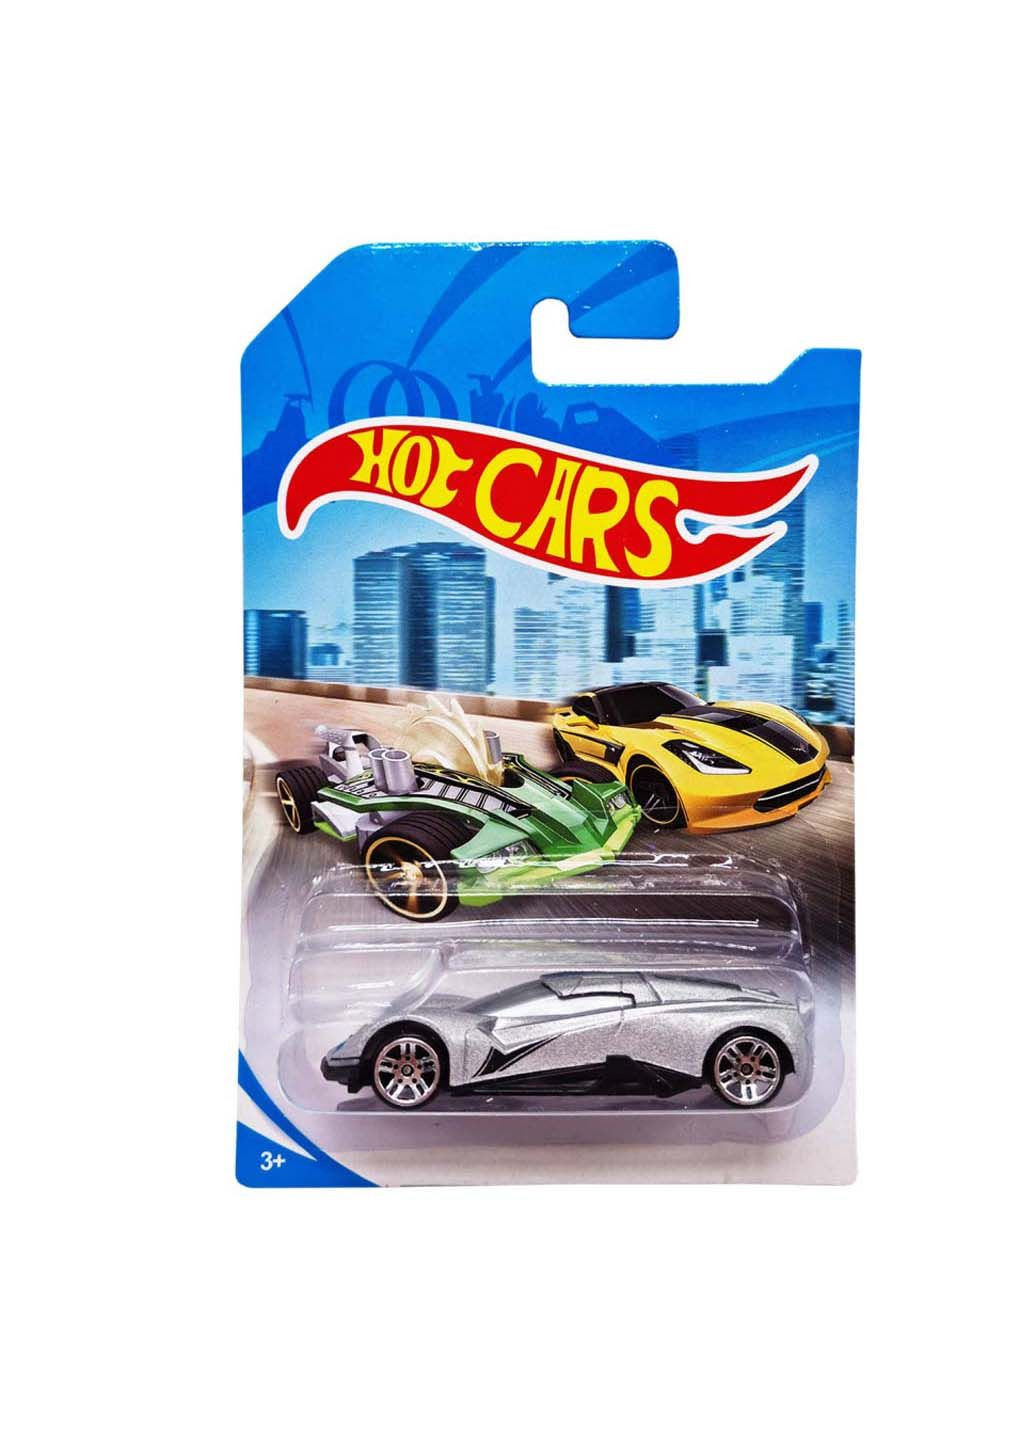 Машинка игровая металлическая Hot cars 324-12 масштаб 1:64 Bambi (293060496)